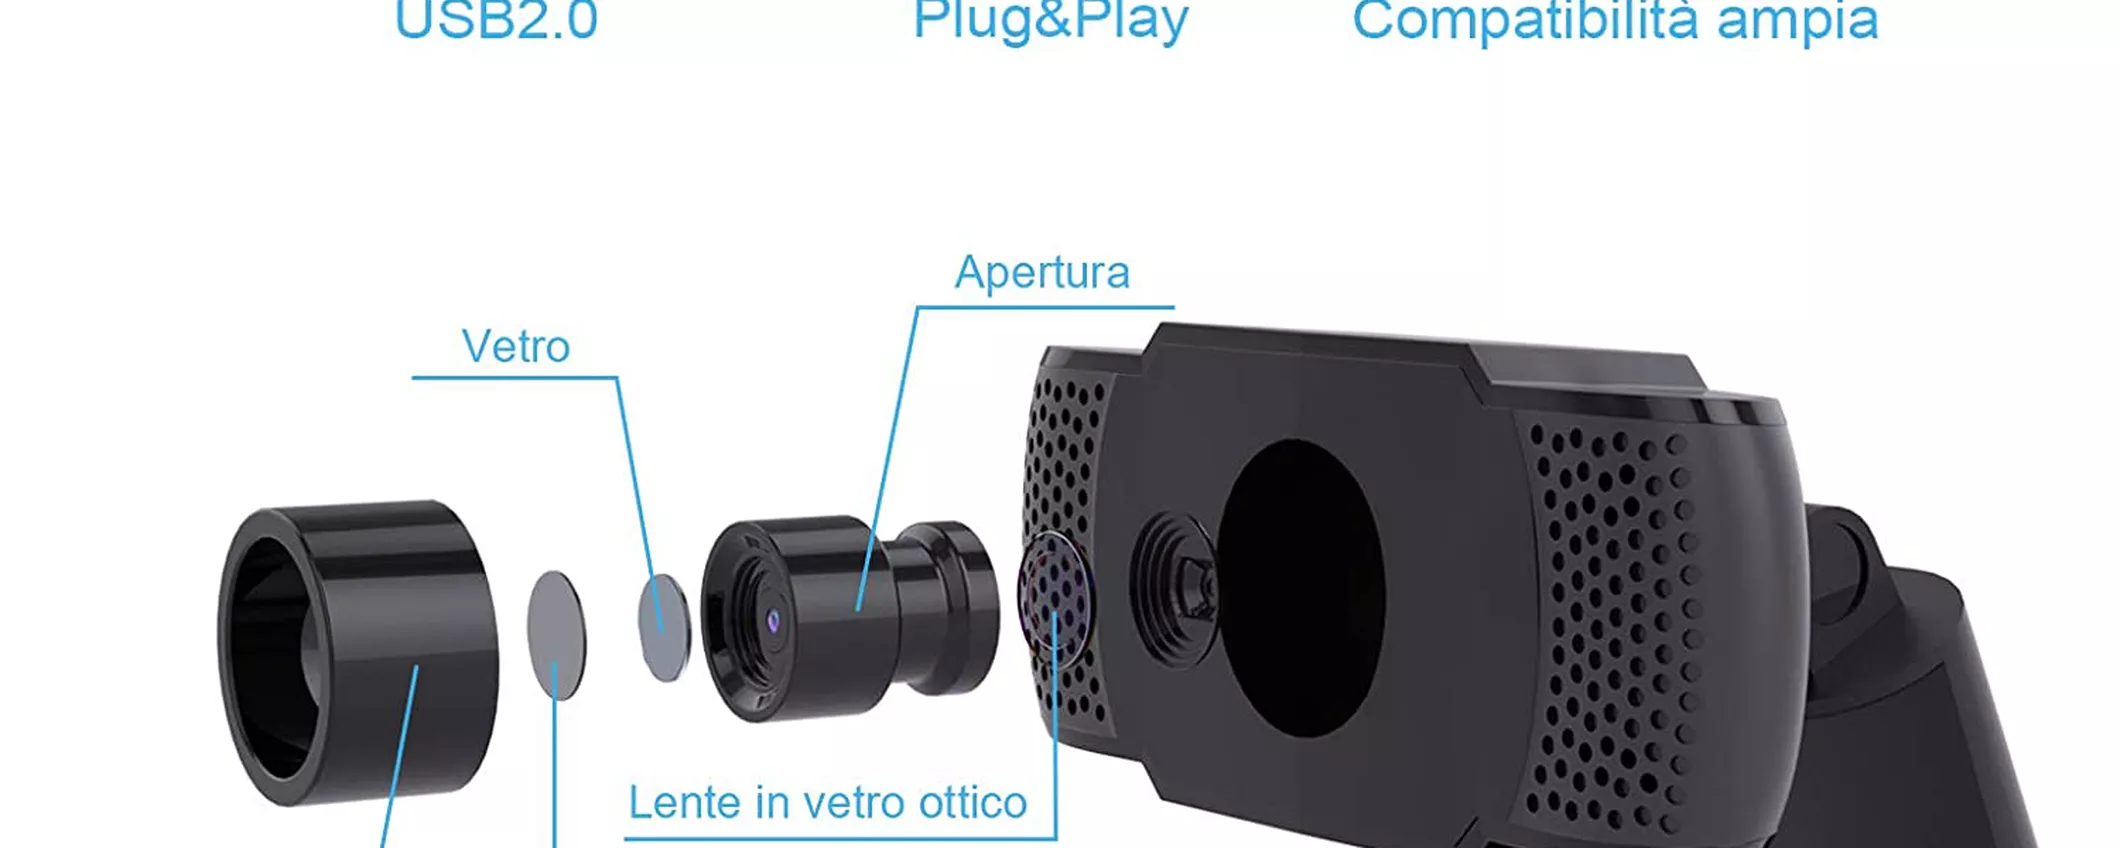 Webcam 1080P con microfono: perfetta per smartworking a 19€